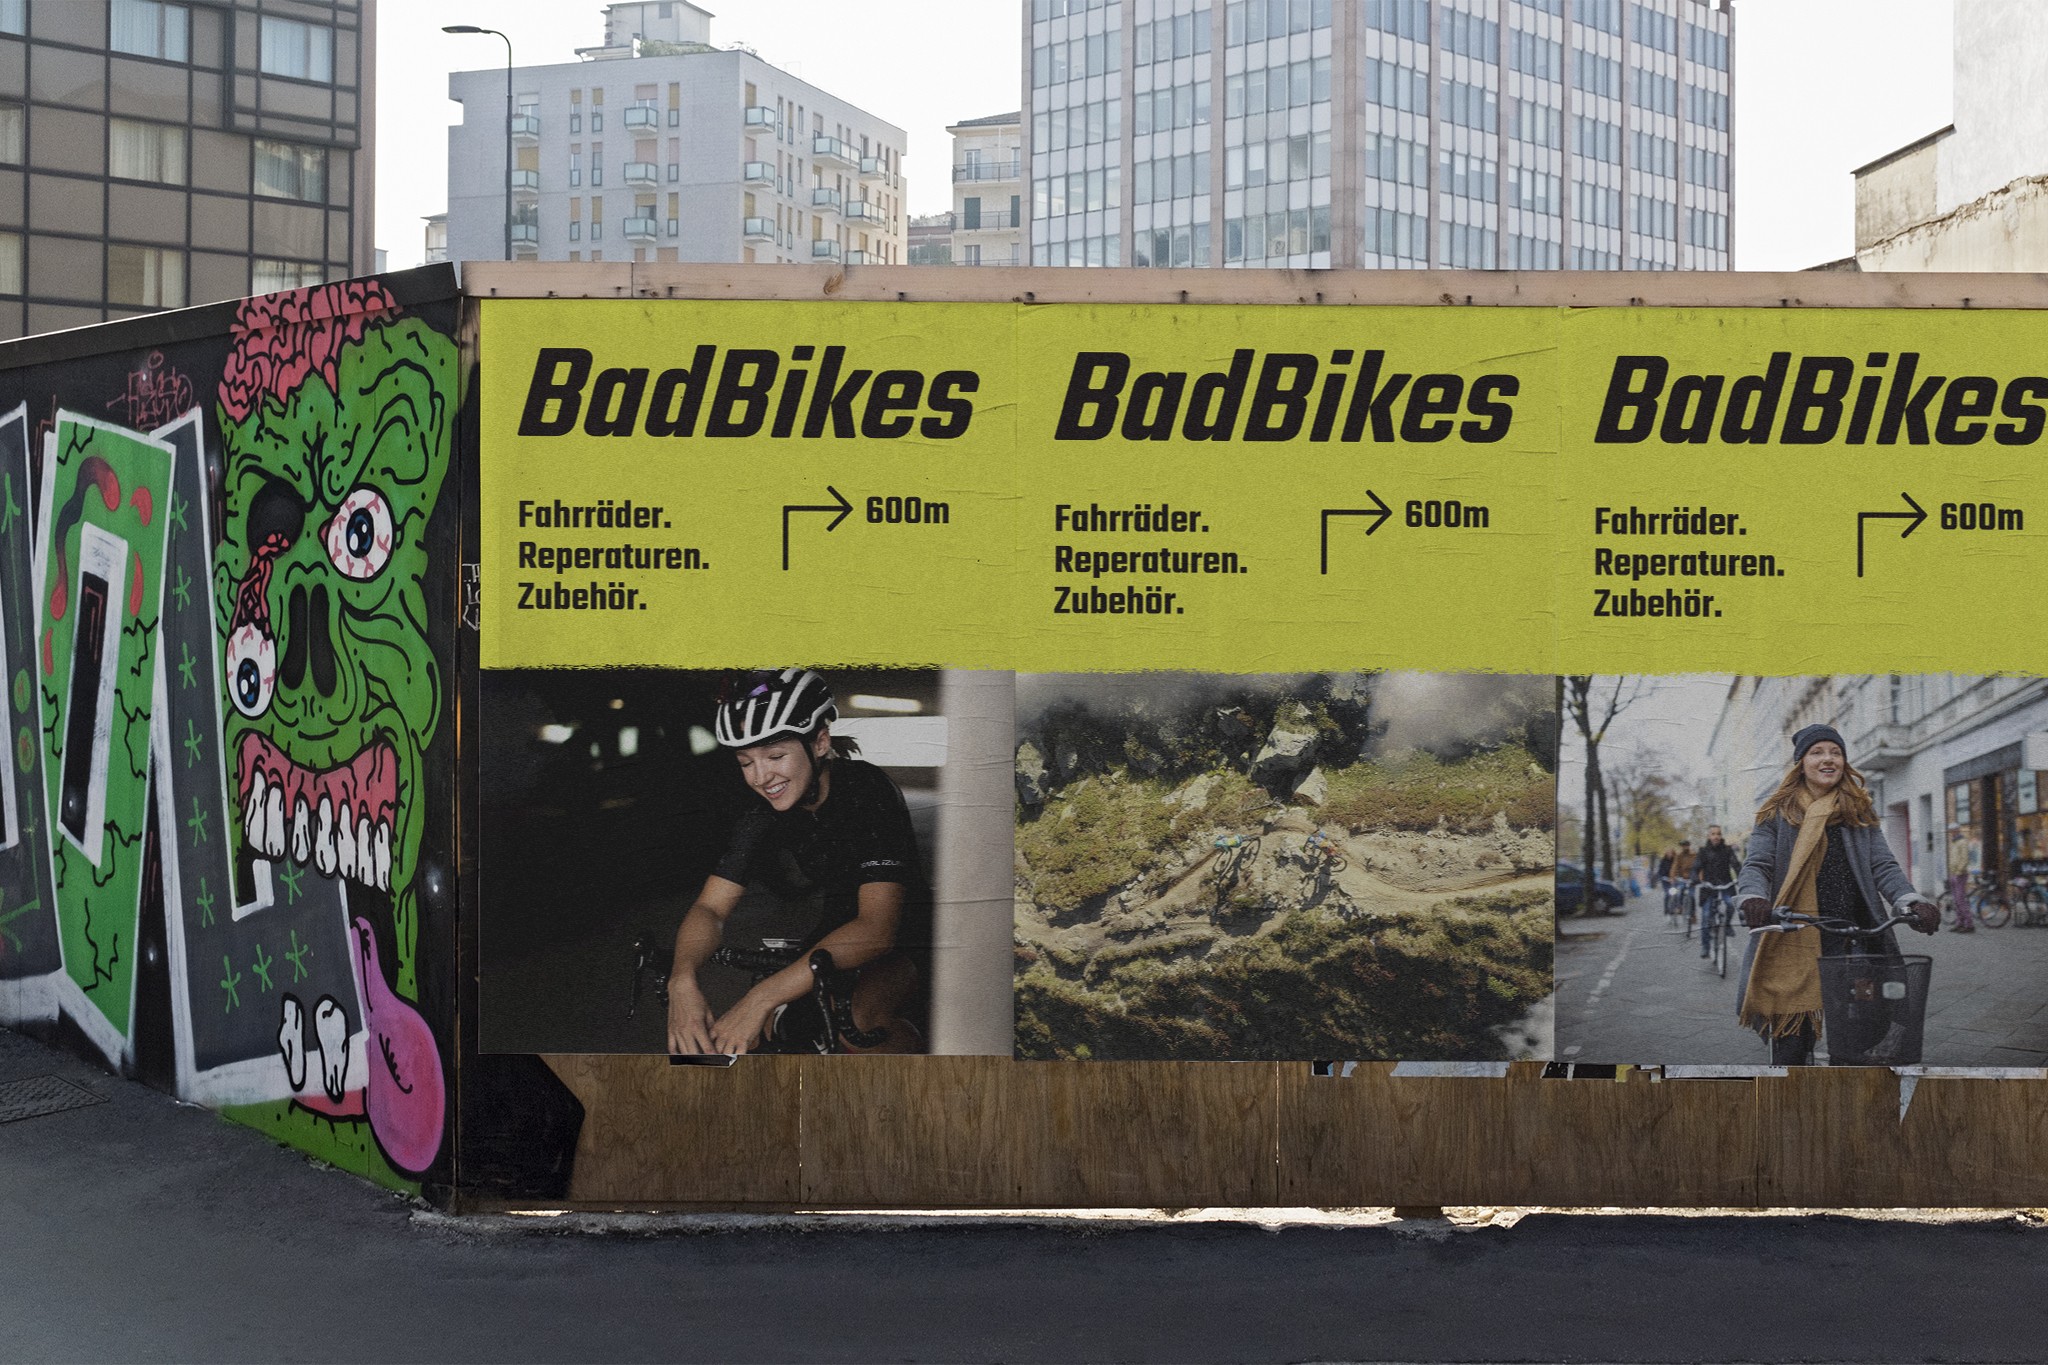 Das Bild zeigt die Plakate eines Fahrradgeschäfts an einem Bauzaun